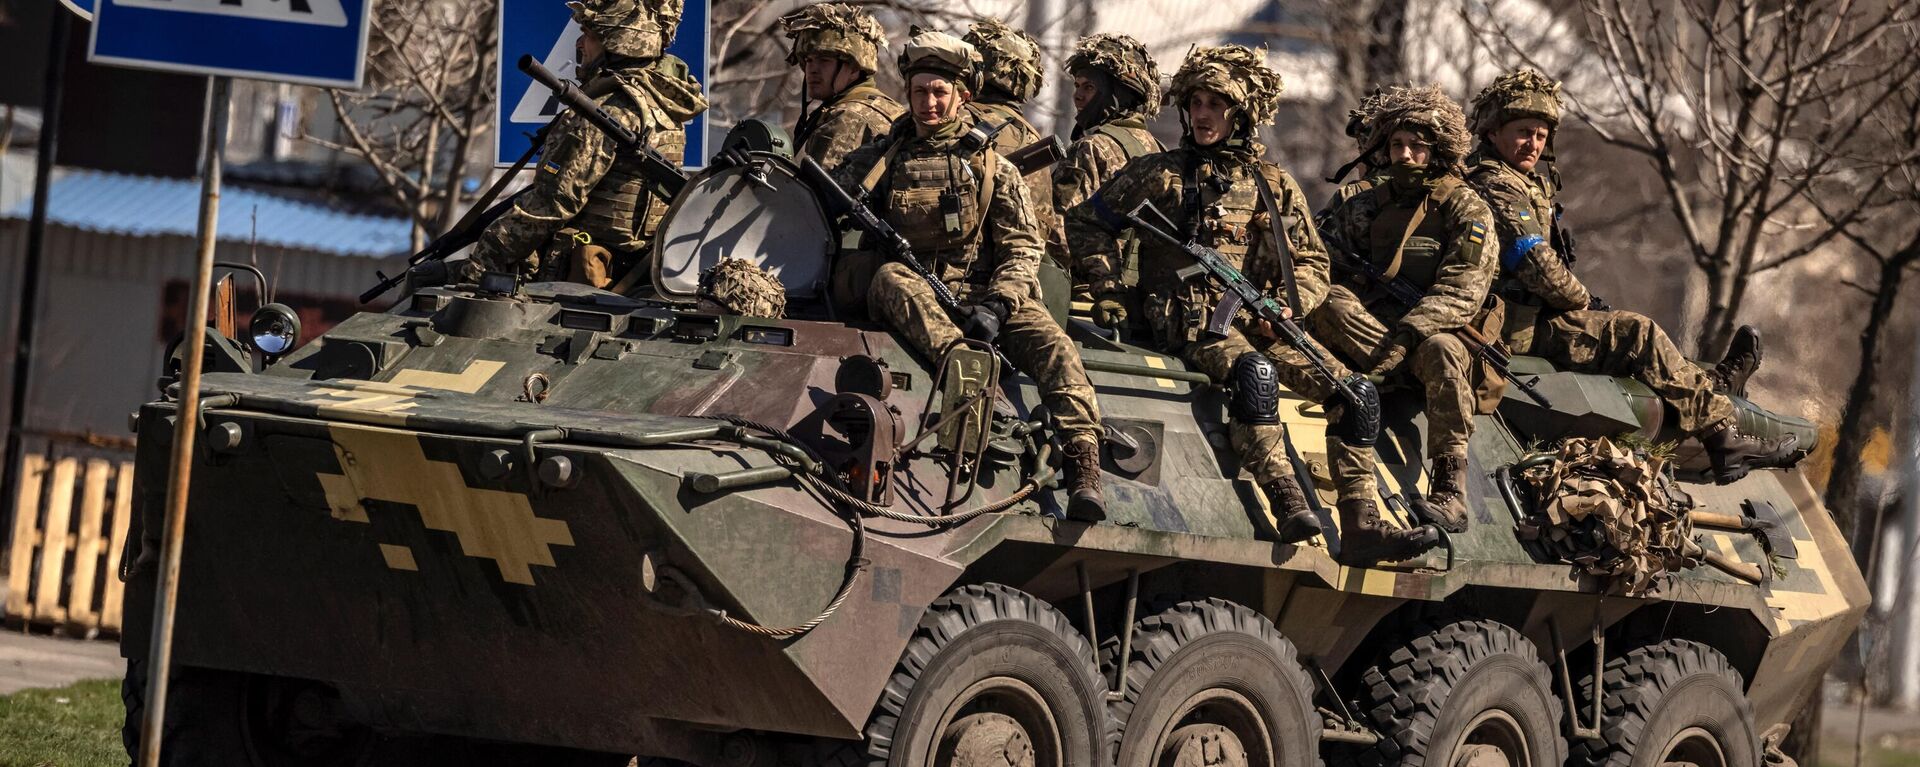 Украинские солдаты сидят в бронетранспортере в городе Северодонецк, Донбасс - Sputnik Абхазия, 1920, 13.05.2022